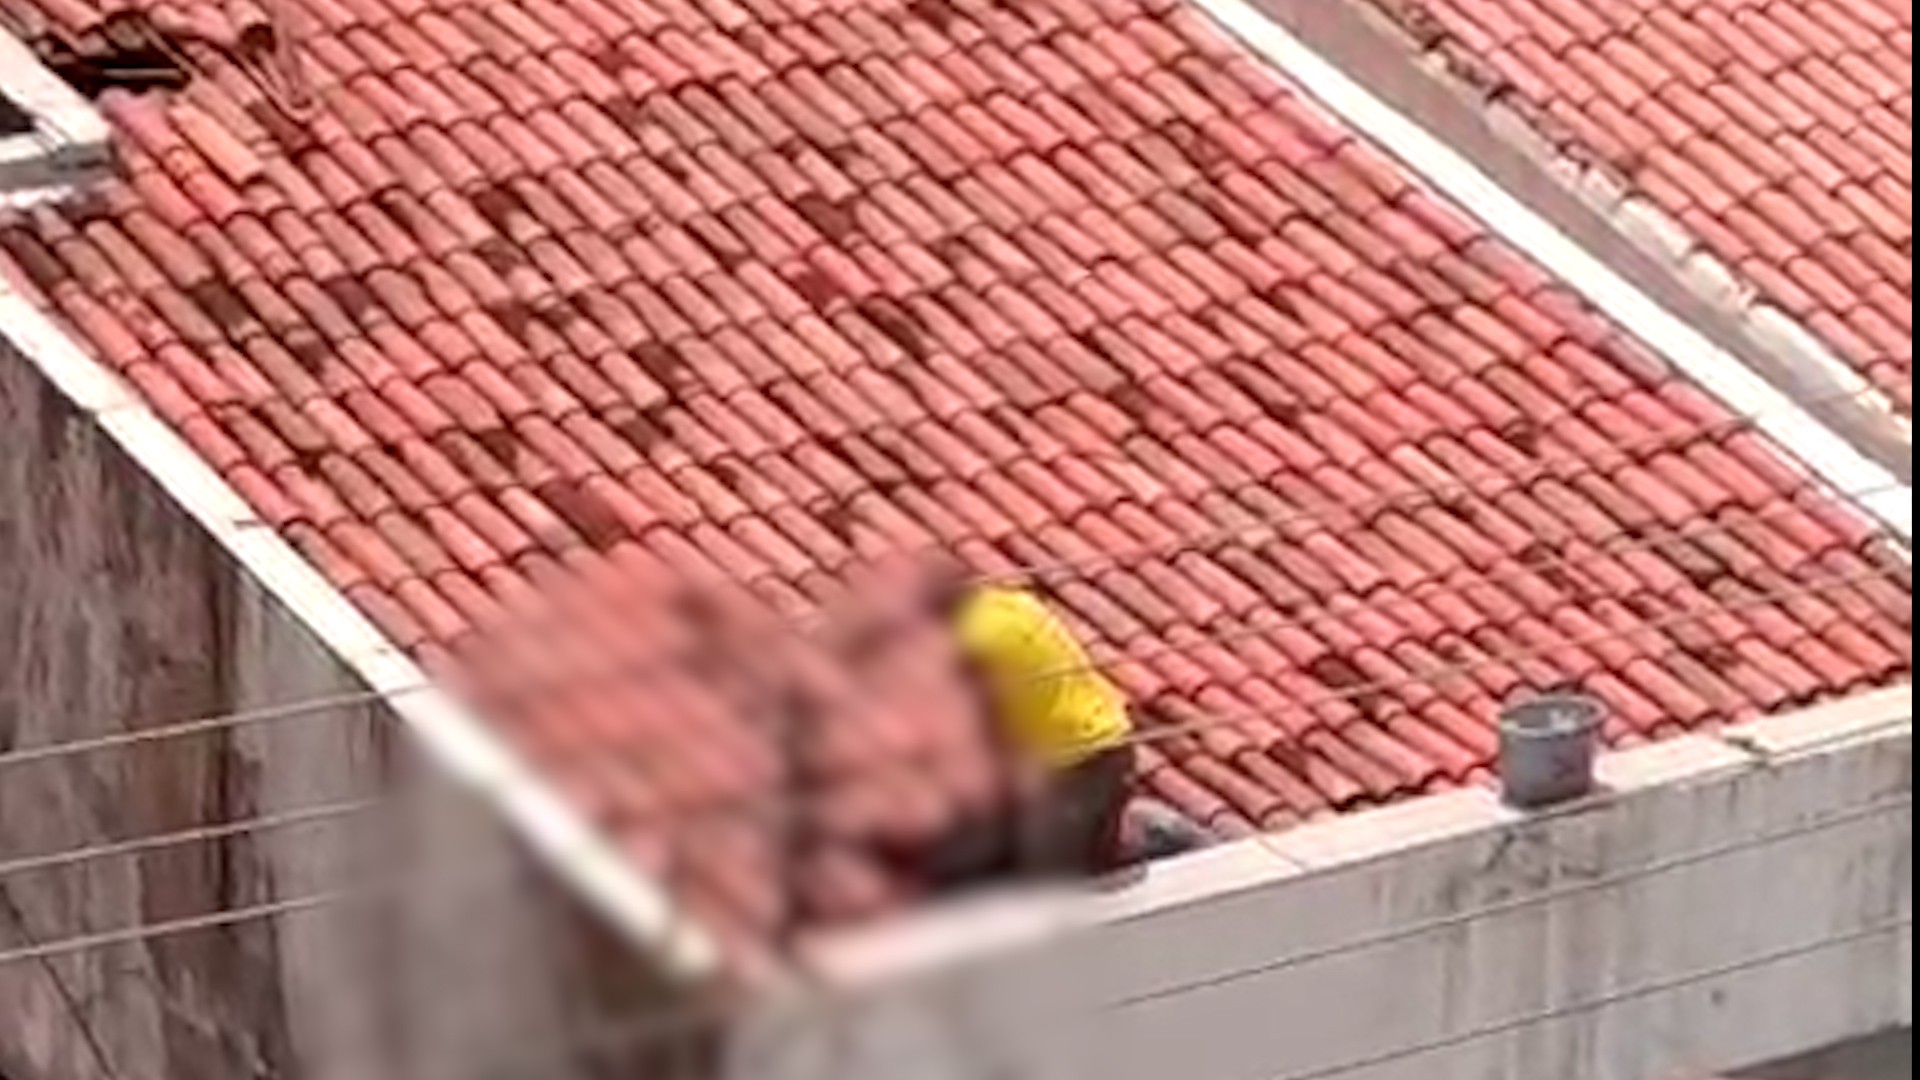 VÍDEO: Homem morre após sofrer choque elétrico em cima de telhado no Centro de São Luís